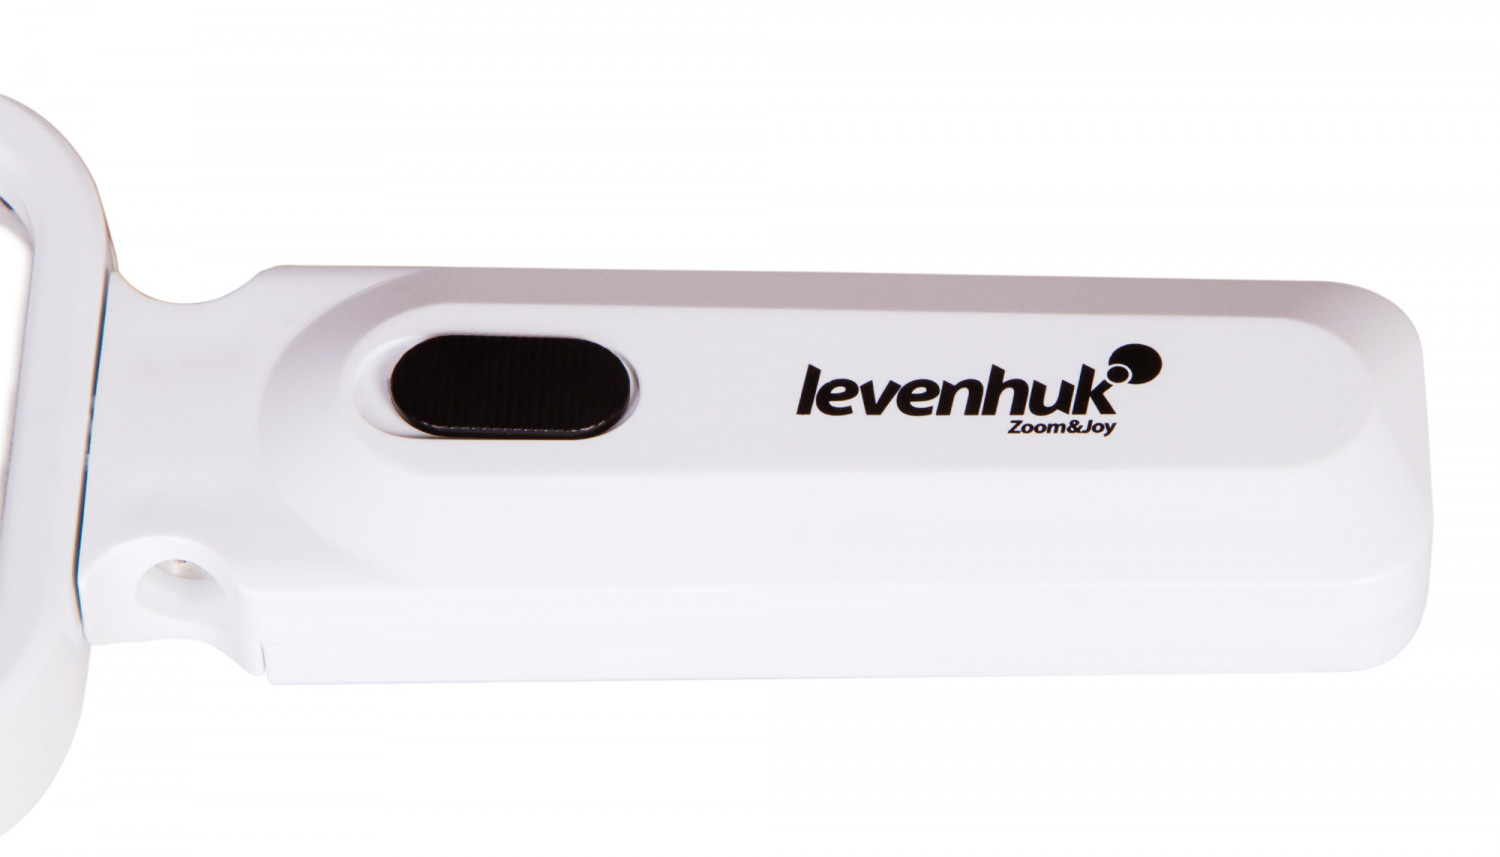 Luup LED-ga Zeno Read ZR10 L74066 LEVENHUK